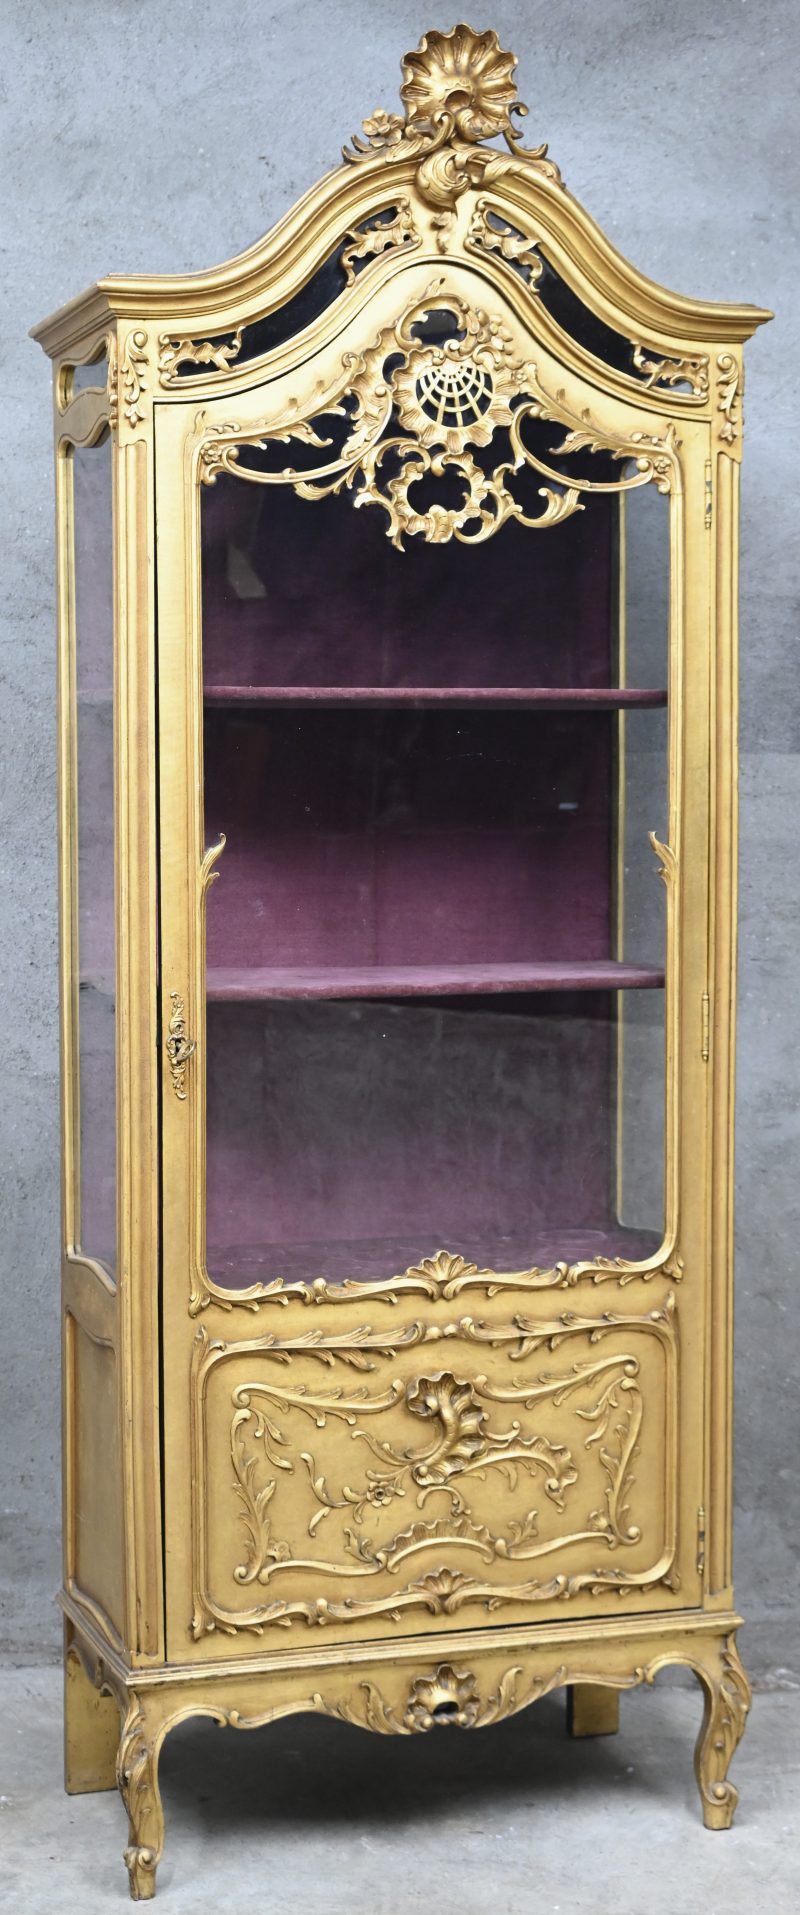 Een gesculpteerde en vergulde houten vitrinekast in Louis-XV stijl. De binnenkant is bekleed in een roze velours stof.